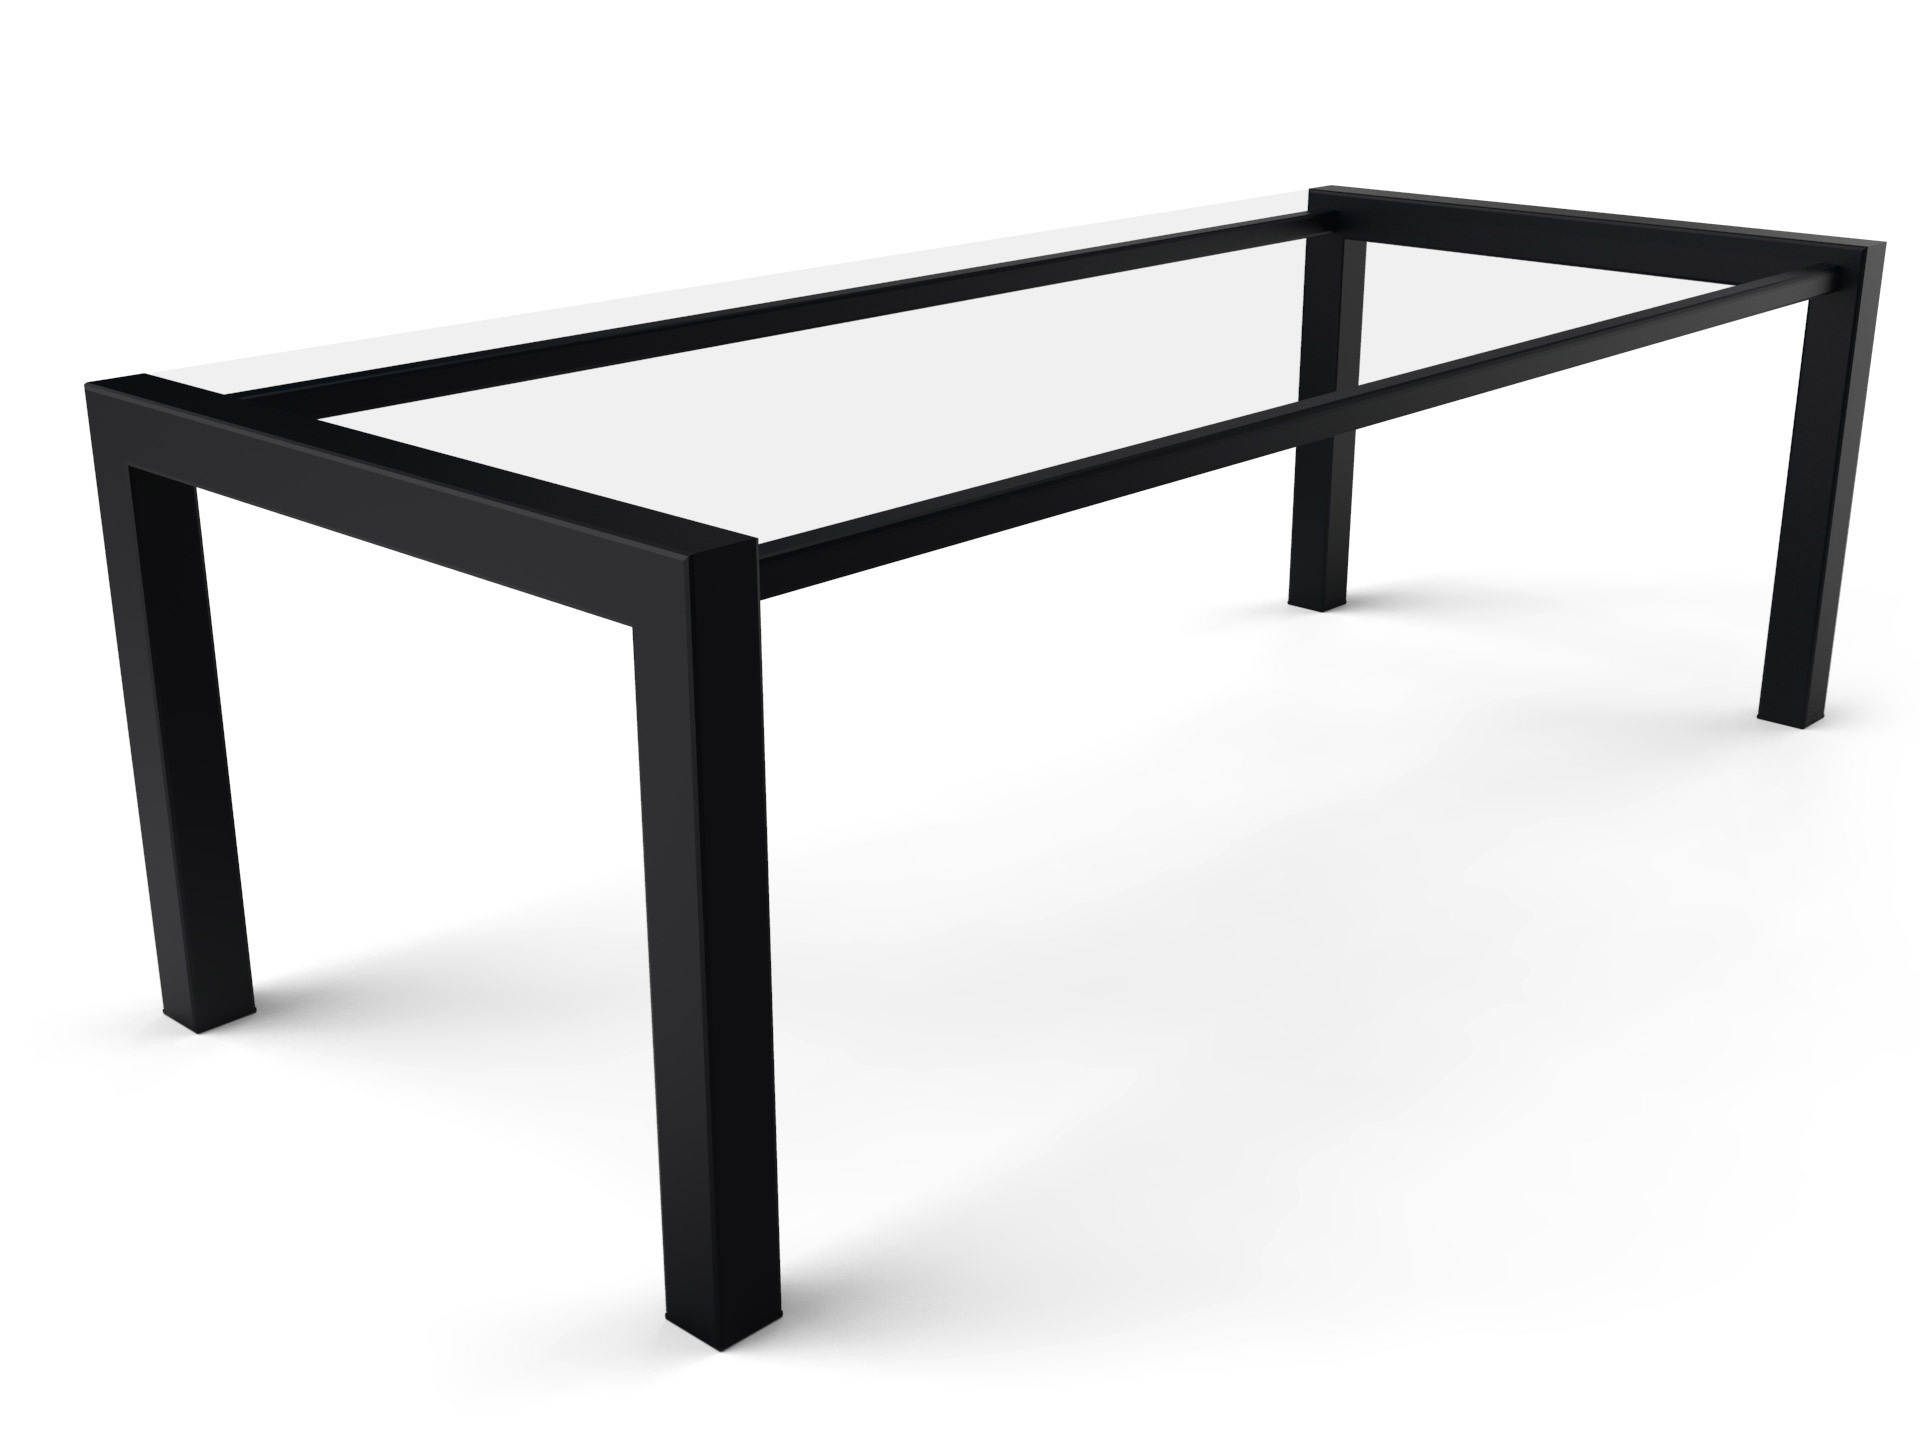 Onderstellen voor tafels RVS, staal, smeedijzer, hout, aluminium en natuursteen